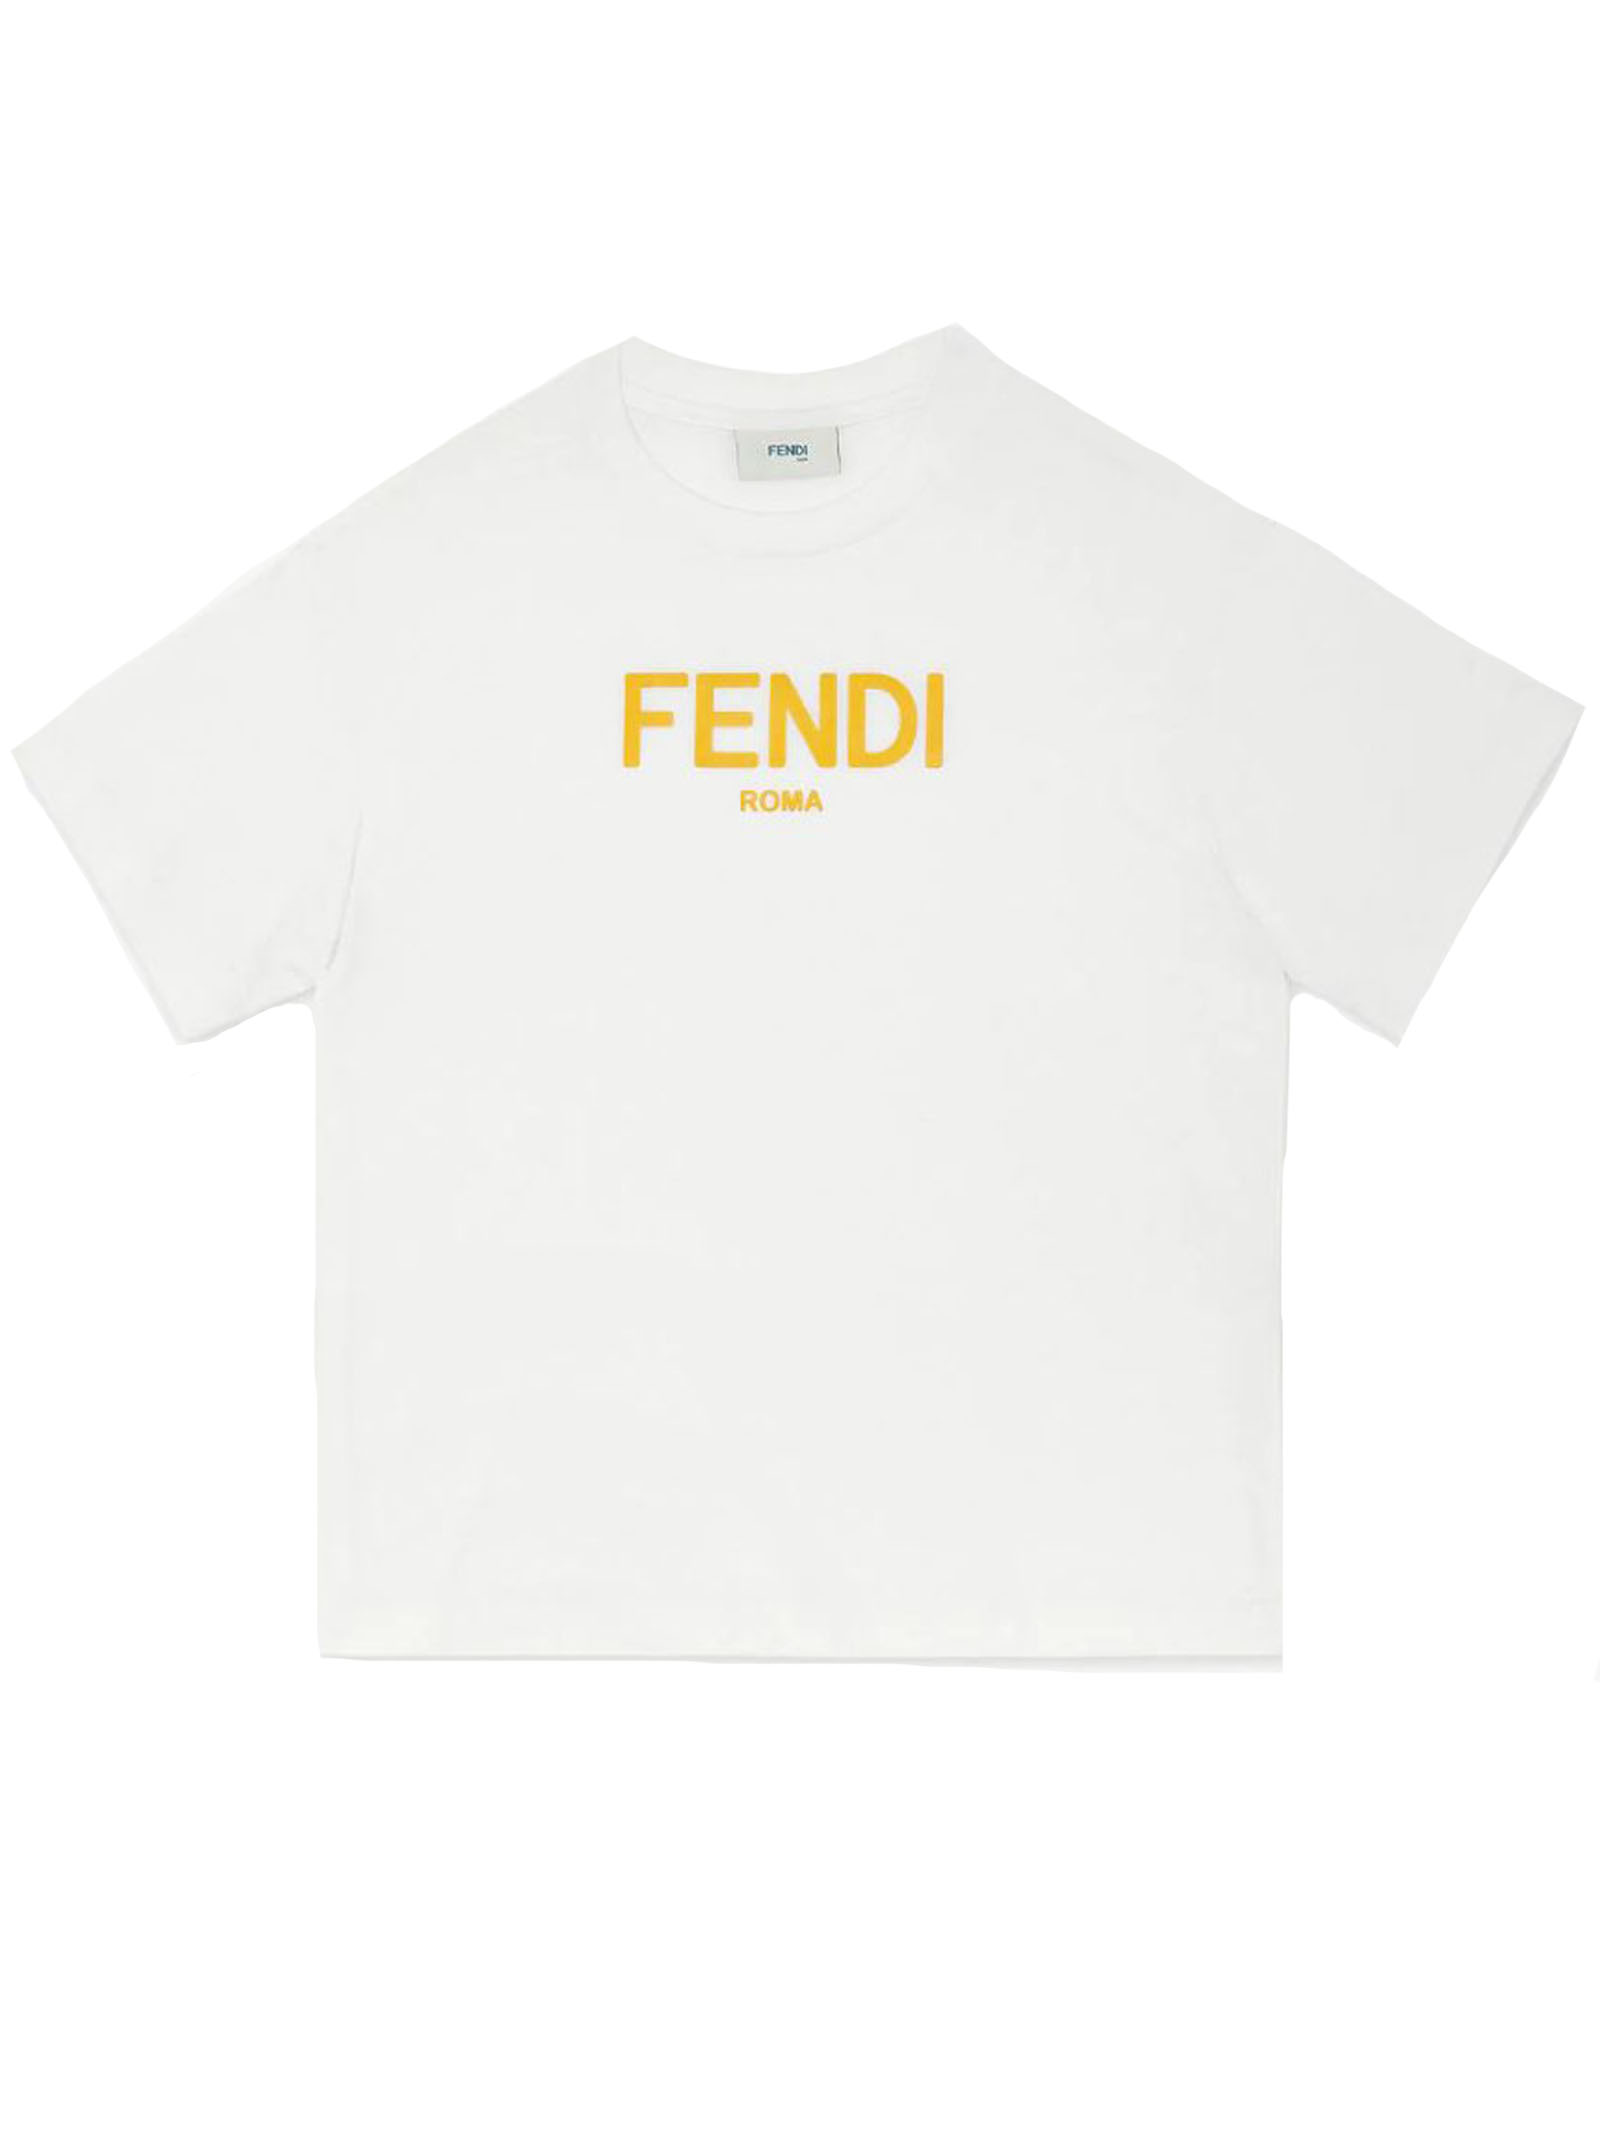 FENDI-jui1377-tshirt-F0TU9-gesso